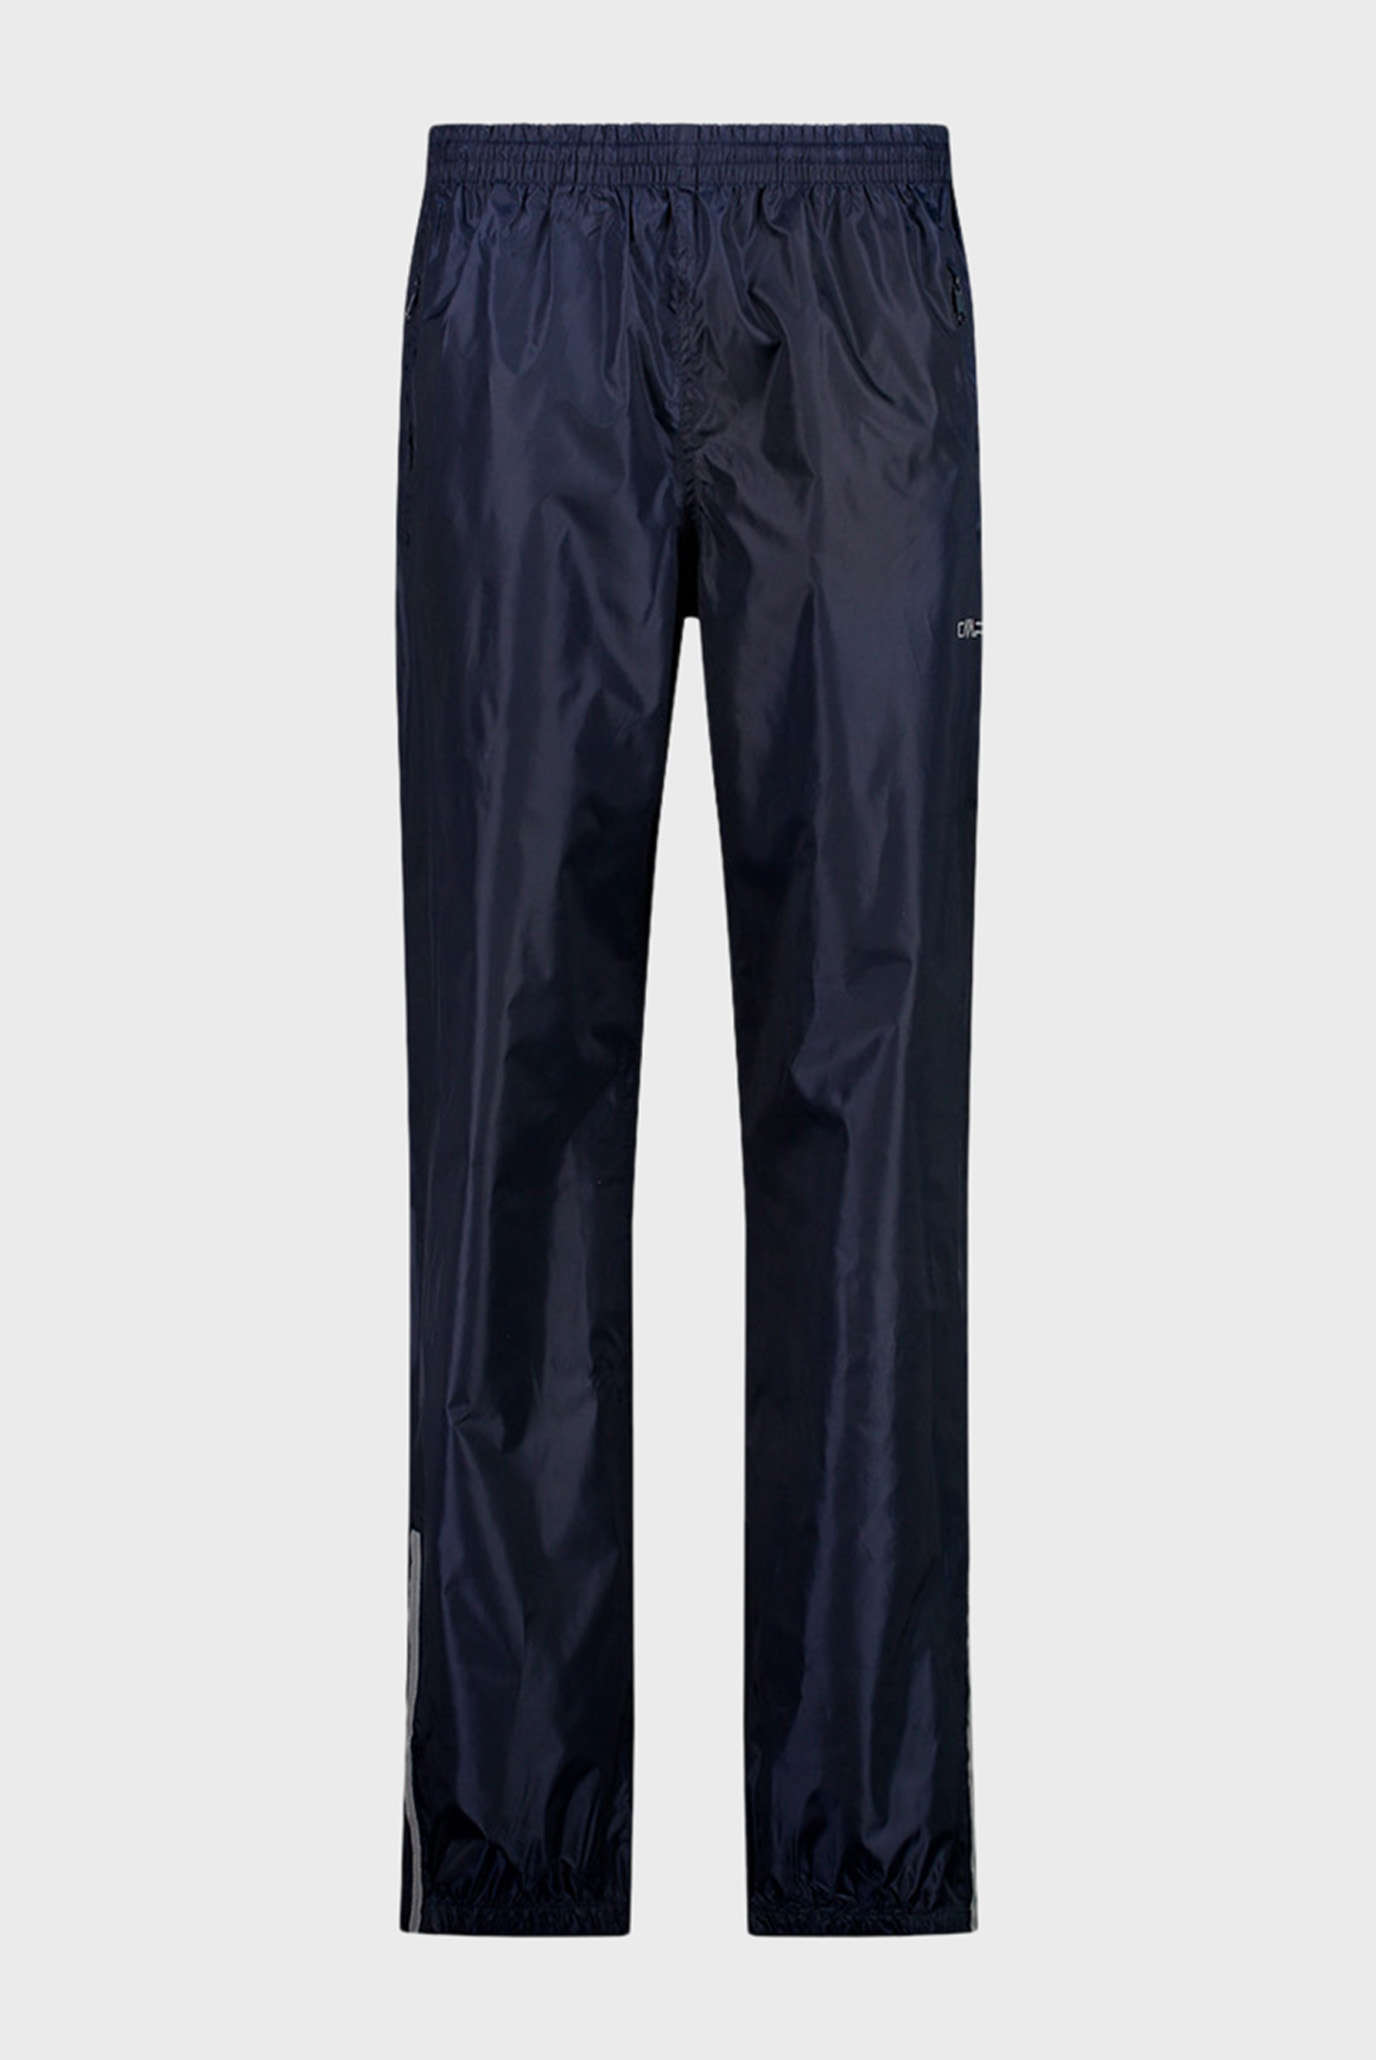 Мужские темно-синие спортивные брюки 1